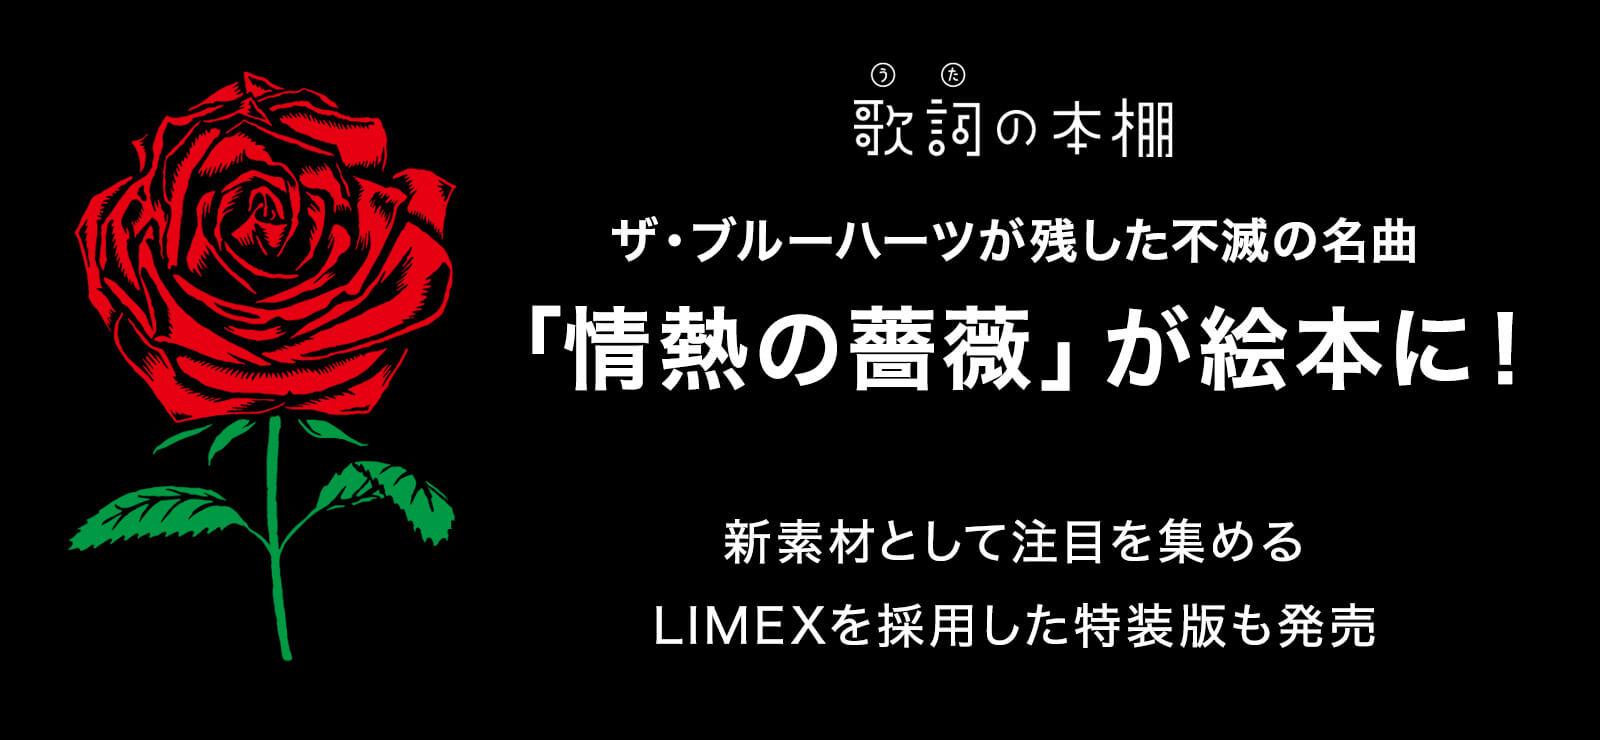 ザ・ブルーハーツが残した不滅の名曲「情熱の薔薇」が絵本に！環境にやさしい新素材として注目を集めるLIMEXを採用した特装版も発売